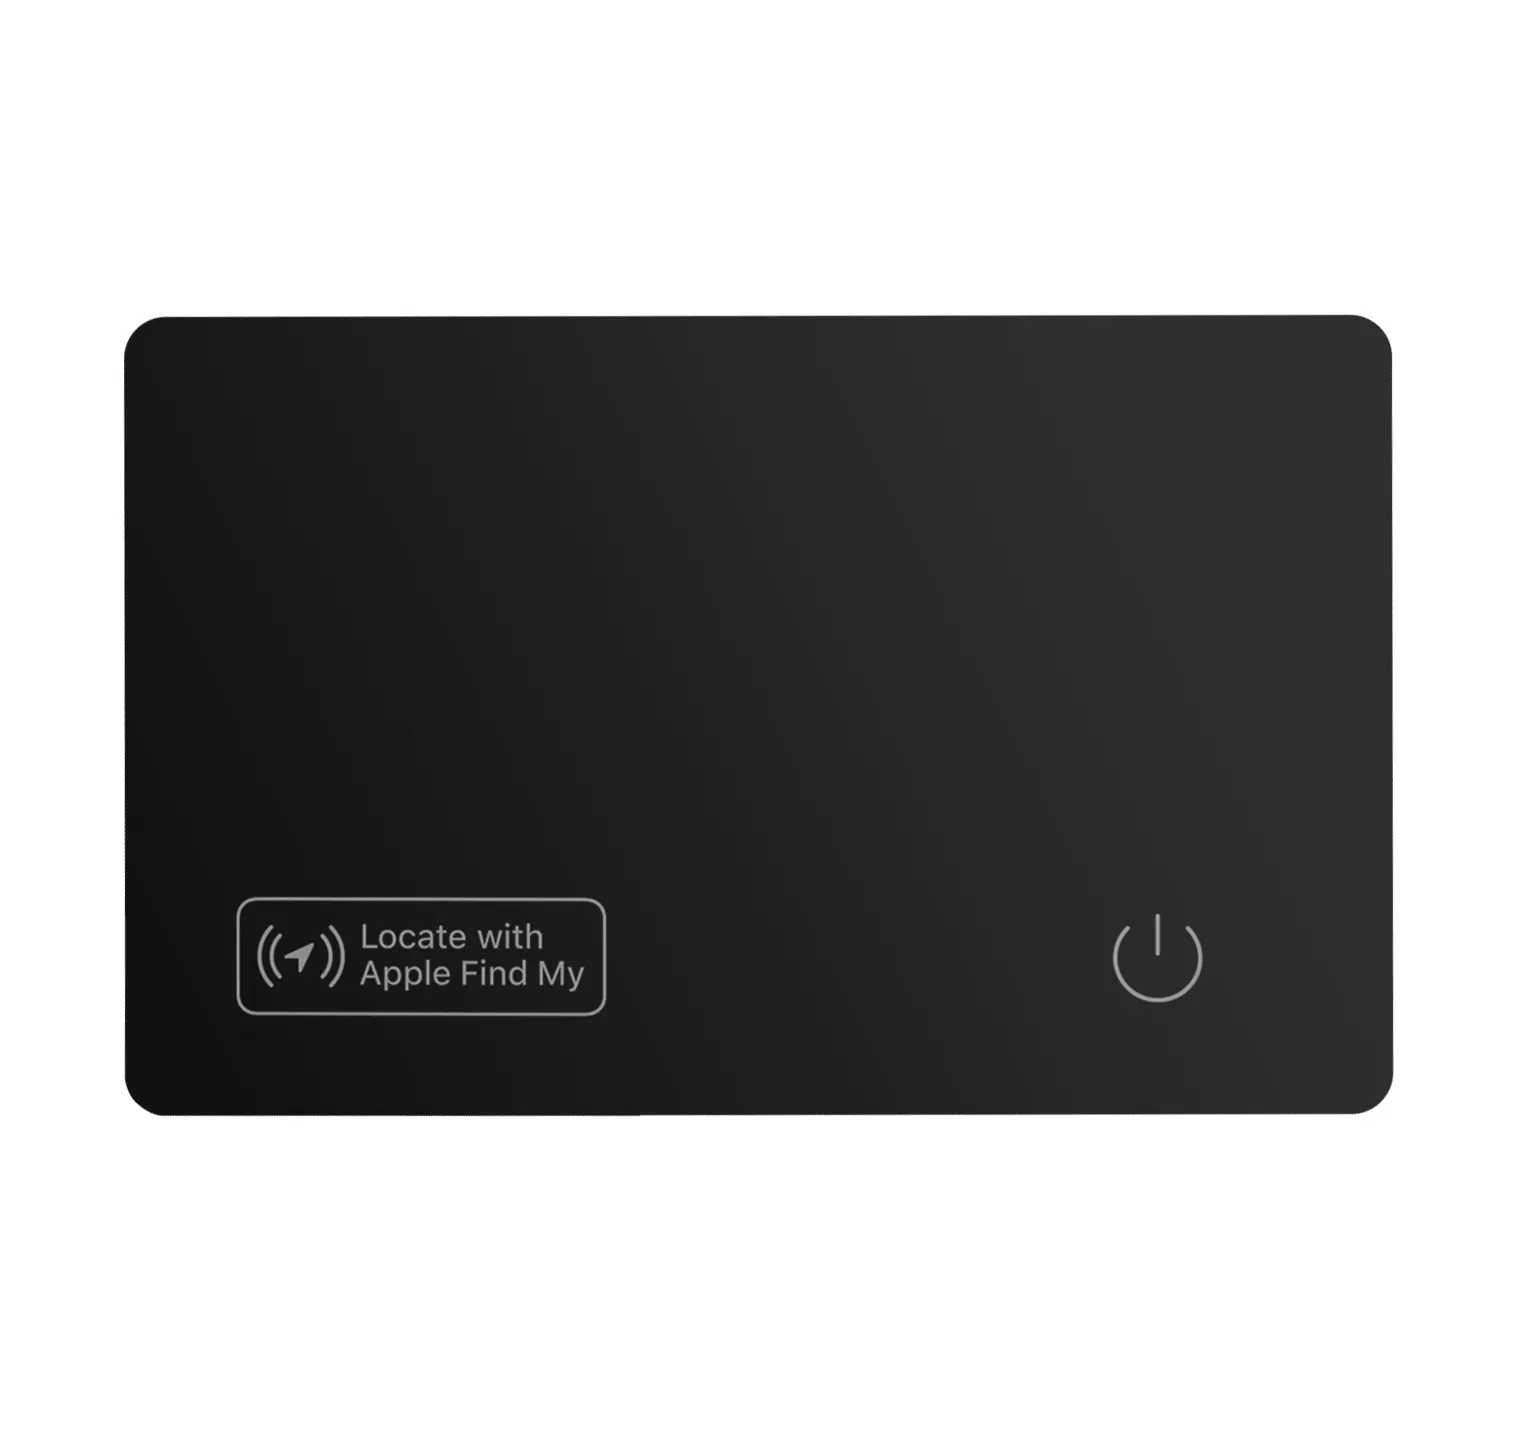 Kart cüzdan izci-Bluetooth cüzdan bulucu iş kartı özelliği NFC ile uyumlu ağımı bul